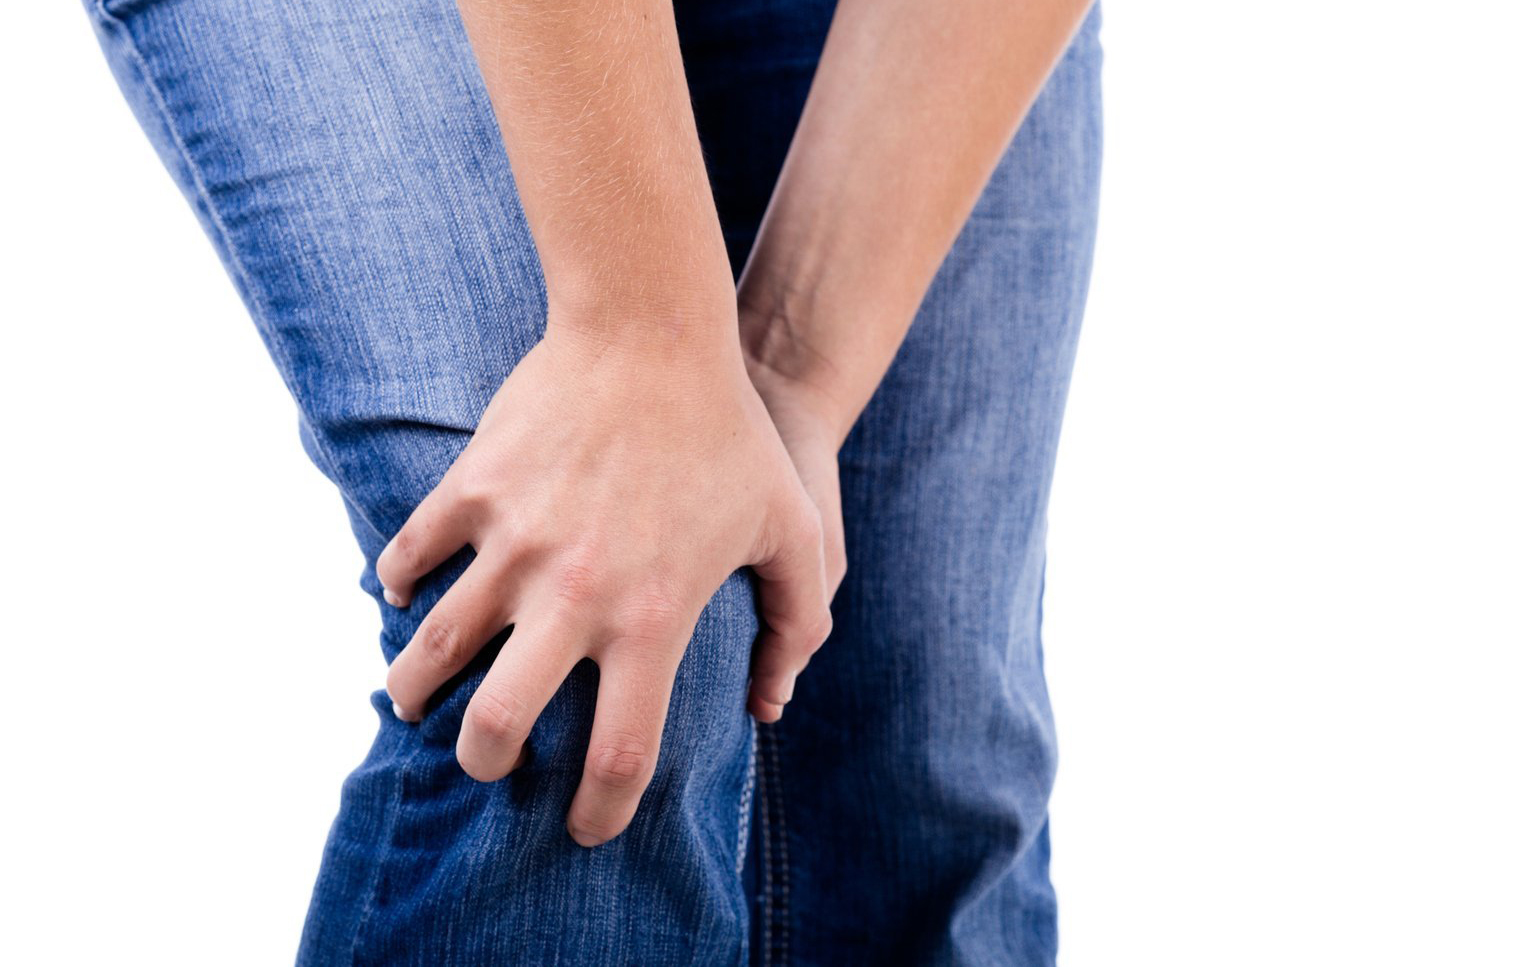 Остеопороз коленного сустава что за болезнь Симптоматика лечение